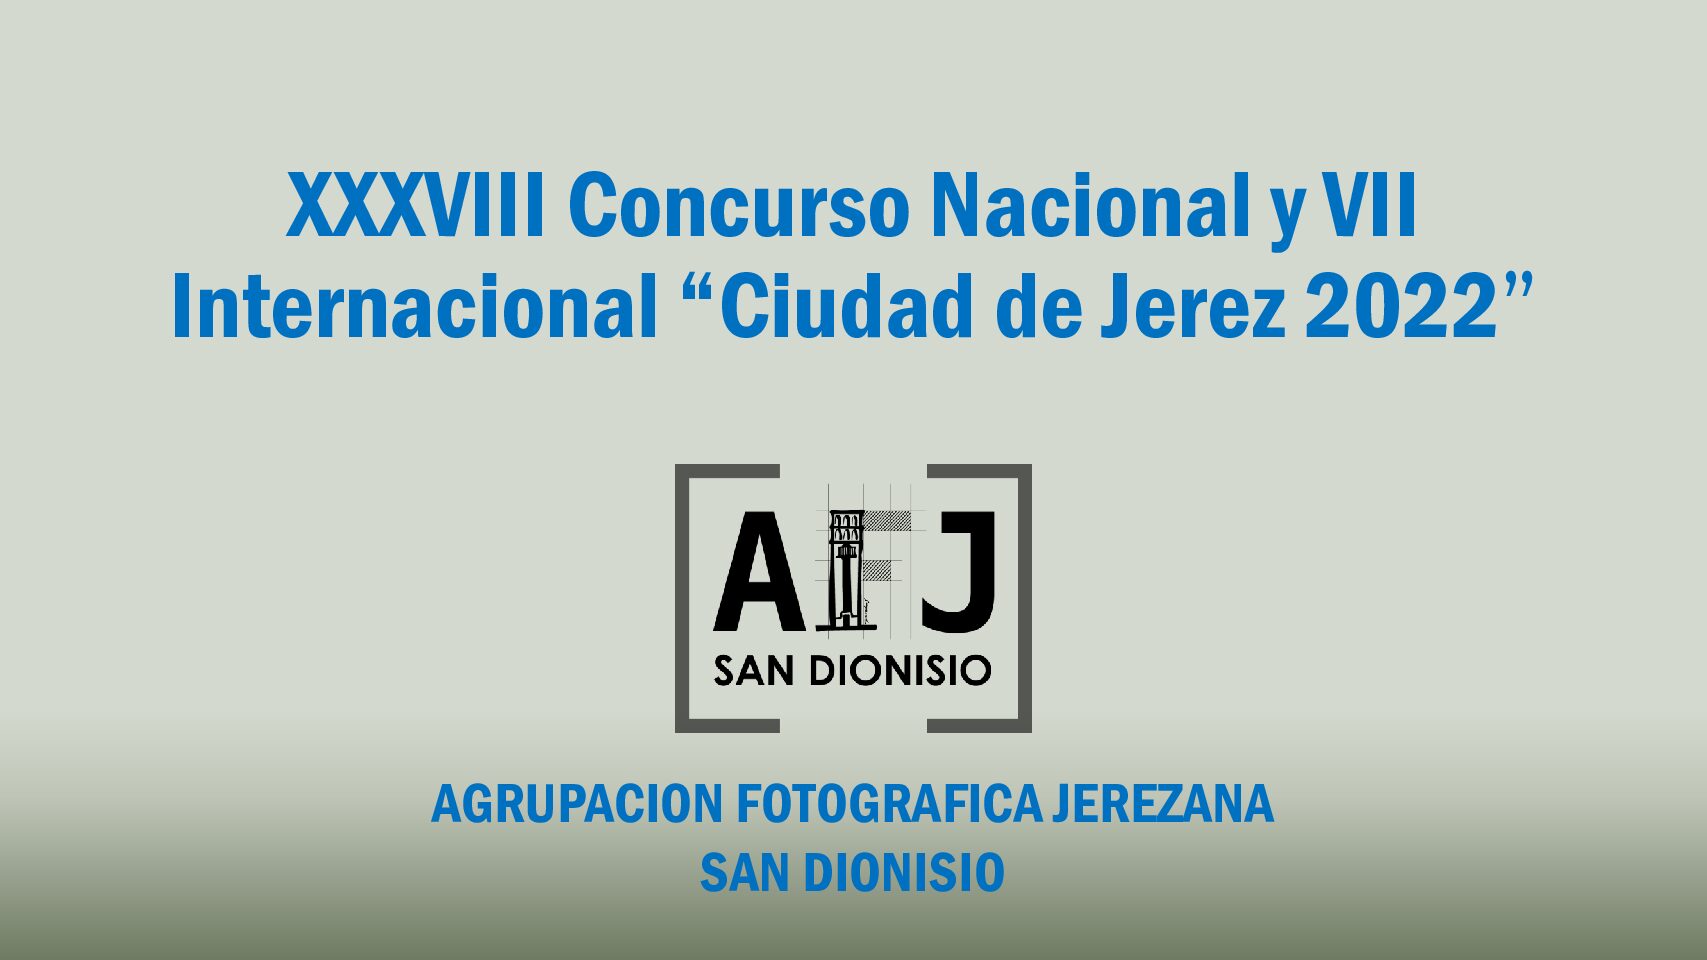 XXXVIII Concurso Nacional y VII Internacional “Ciudad de Jerez”